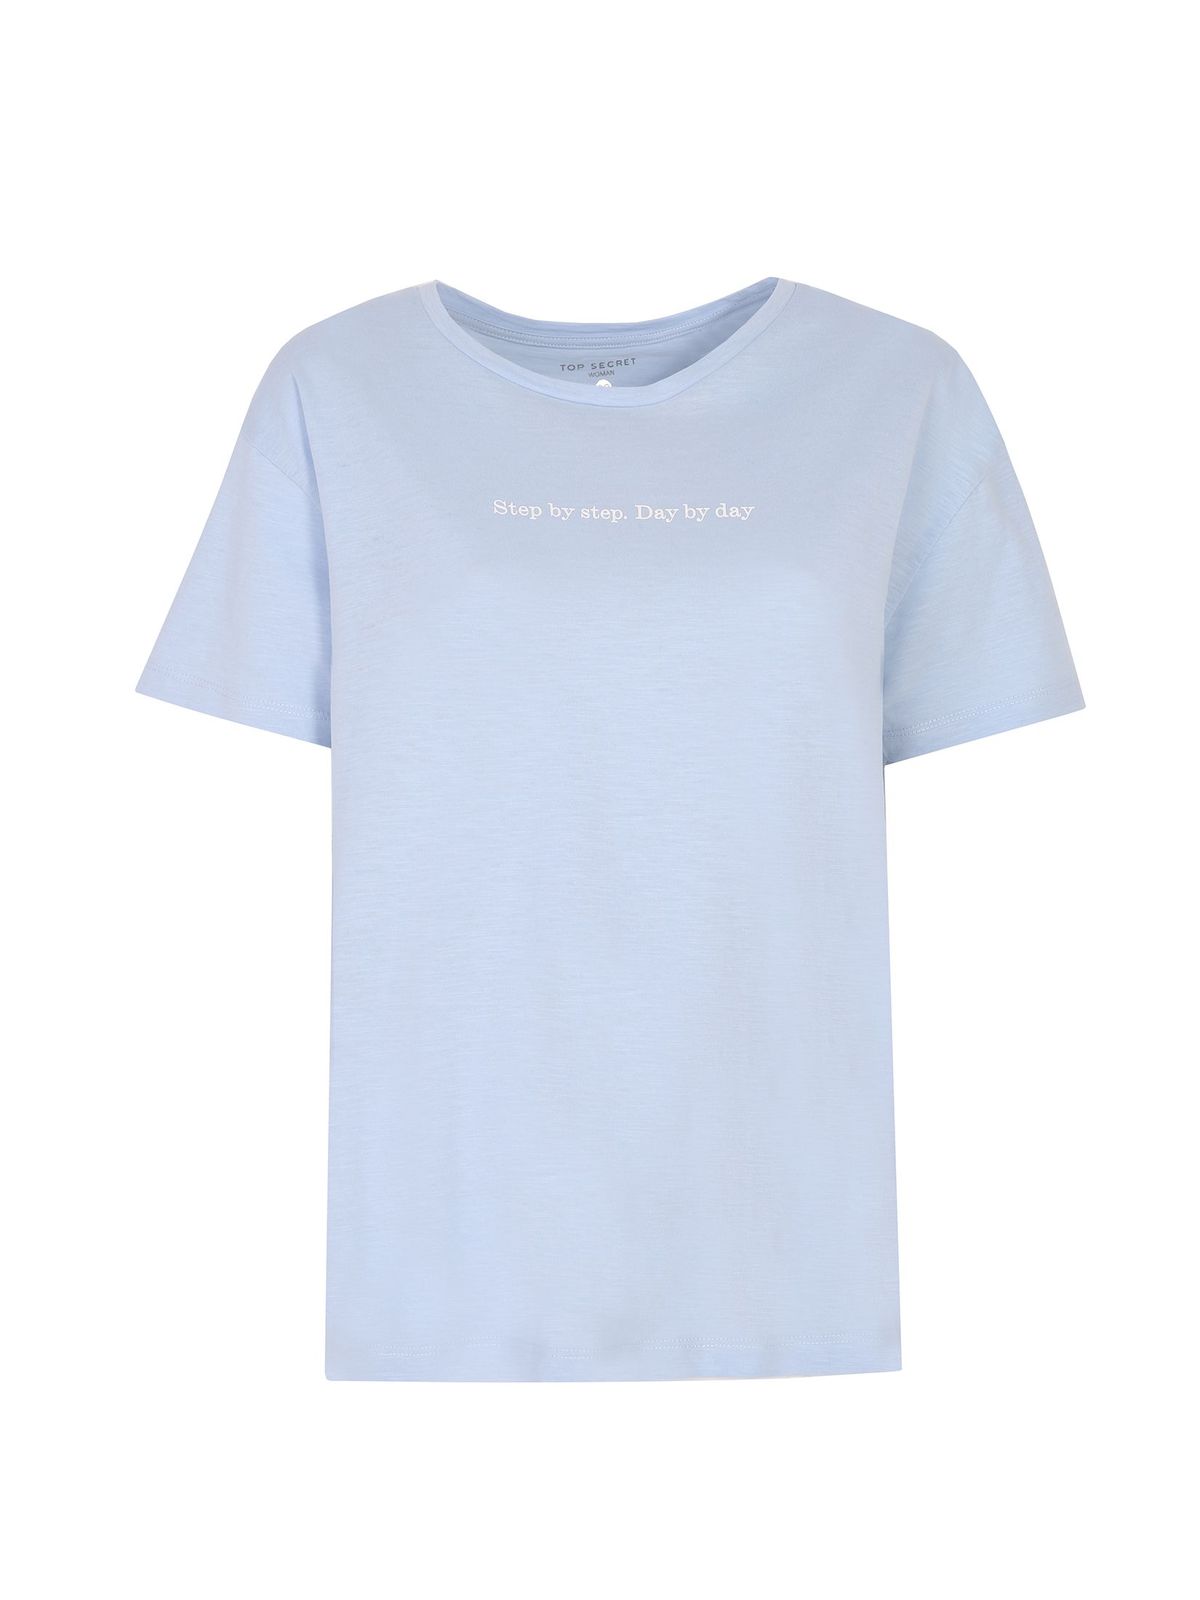 חולצת T טופ סיקרט לנשים TOP SECRET Step - כחול